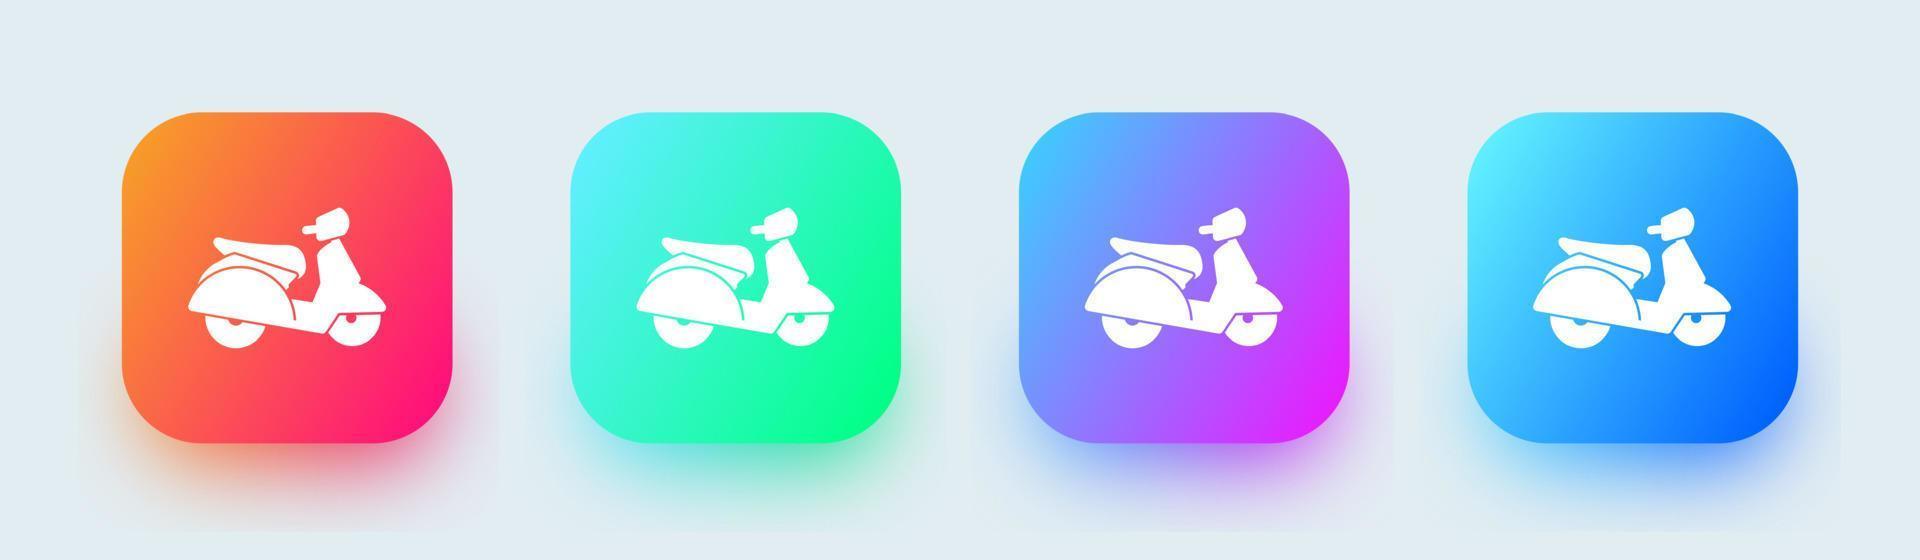 scooter solid ikon i fyrkantiga övertoningsfärger. motorcykel tecken vektor illustration.